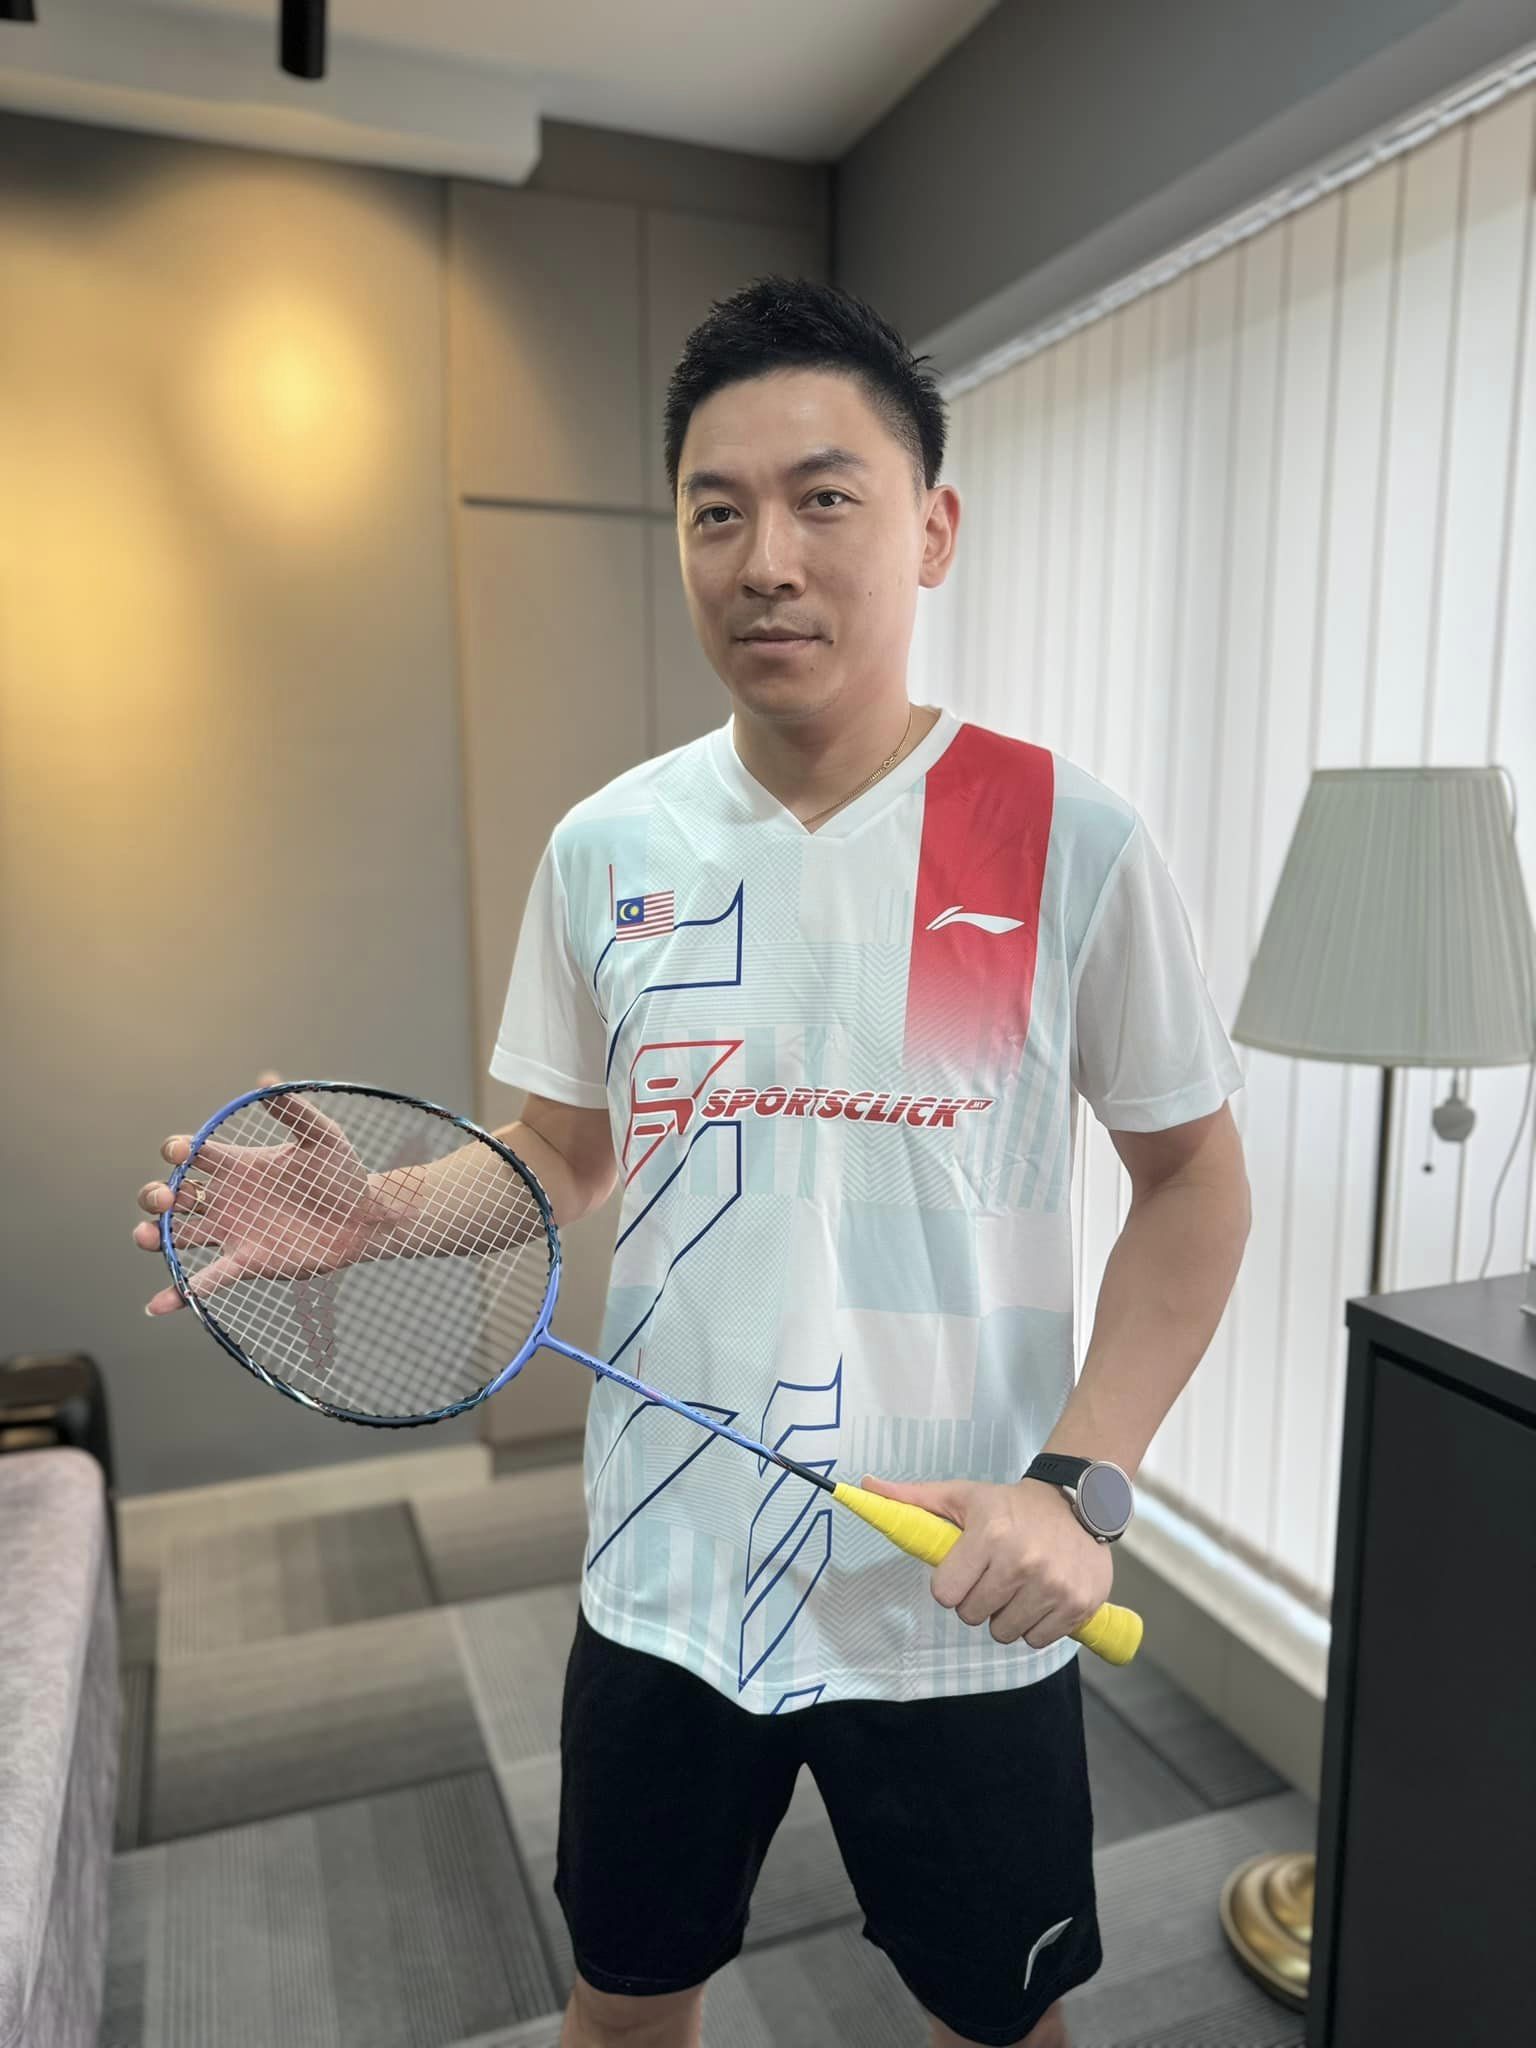 Tan boon heong holding a racquet